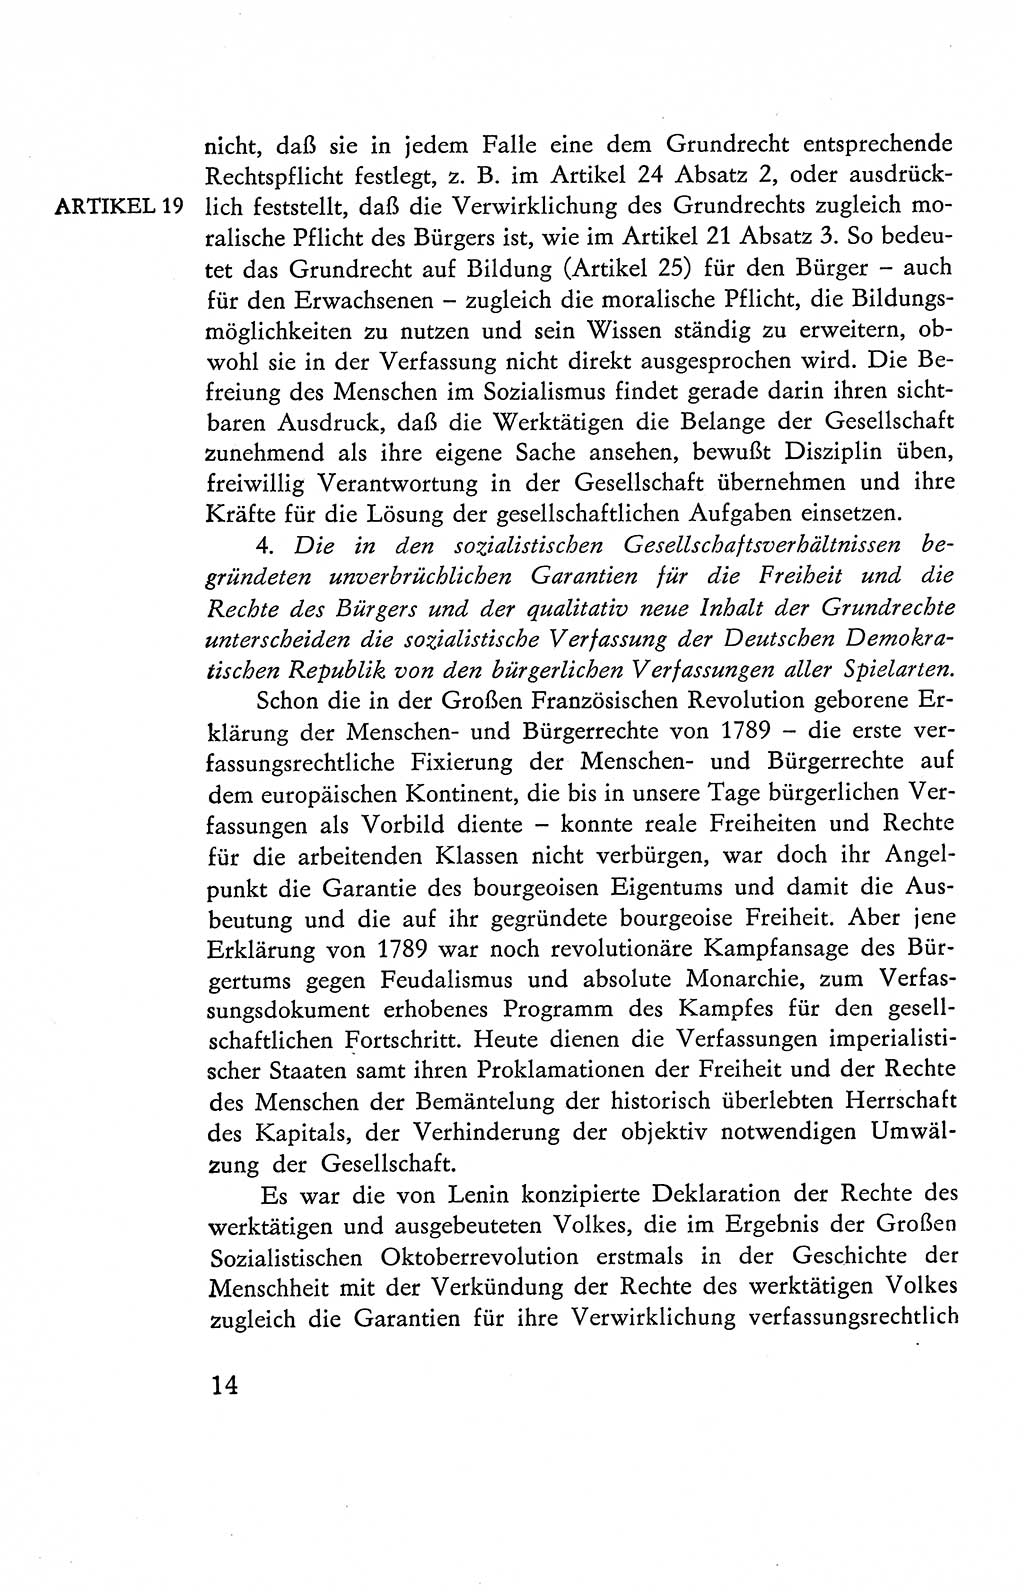 Verfassung der Deutschen Demokratischen Republik (DDR), Dokumente, Kommentar 1969, Band 2, Seite 14 (Verf. DDR Dok. Komm. 1969, Bd. 2, S. 14)